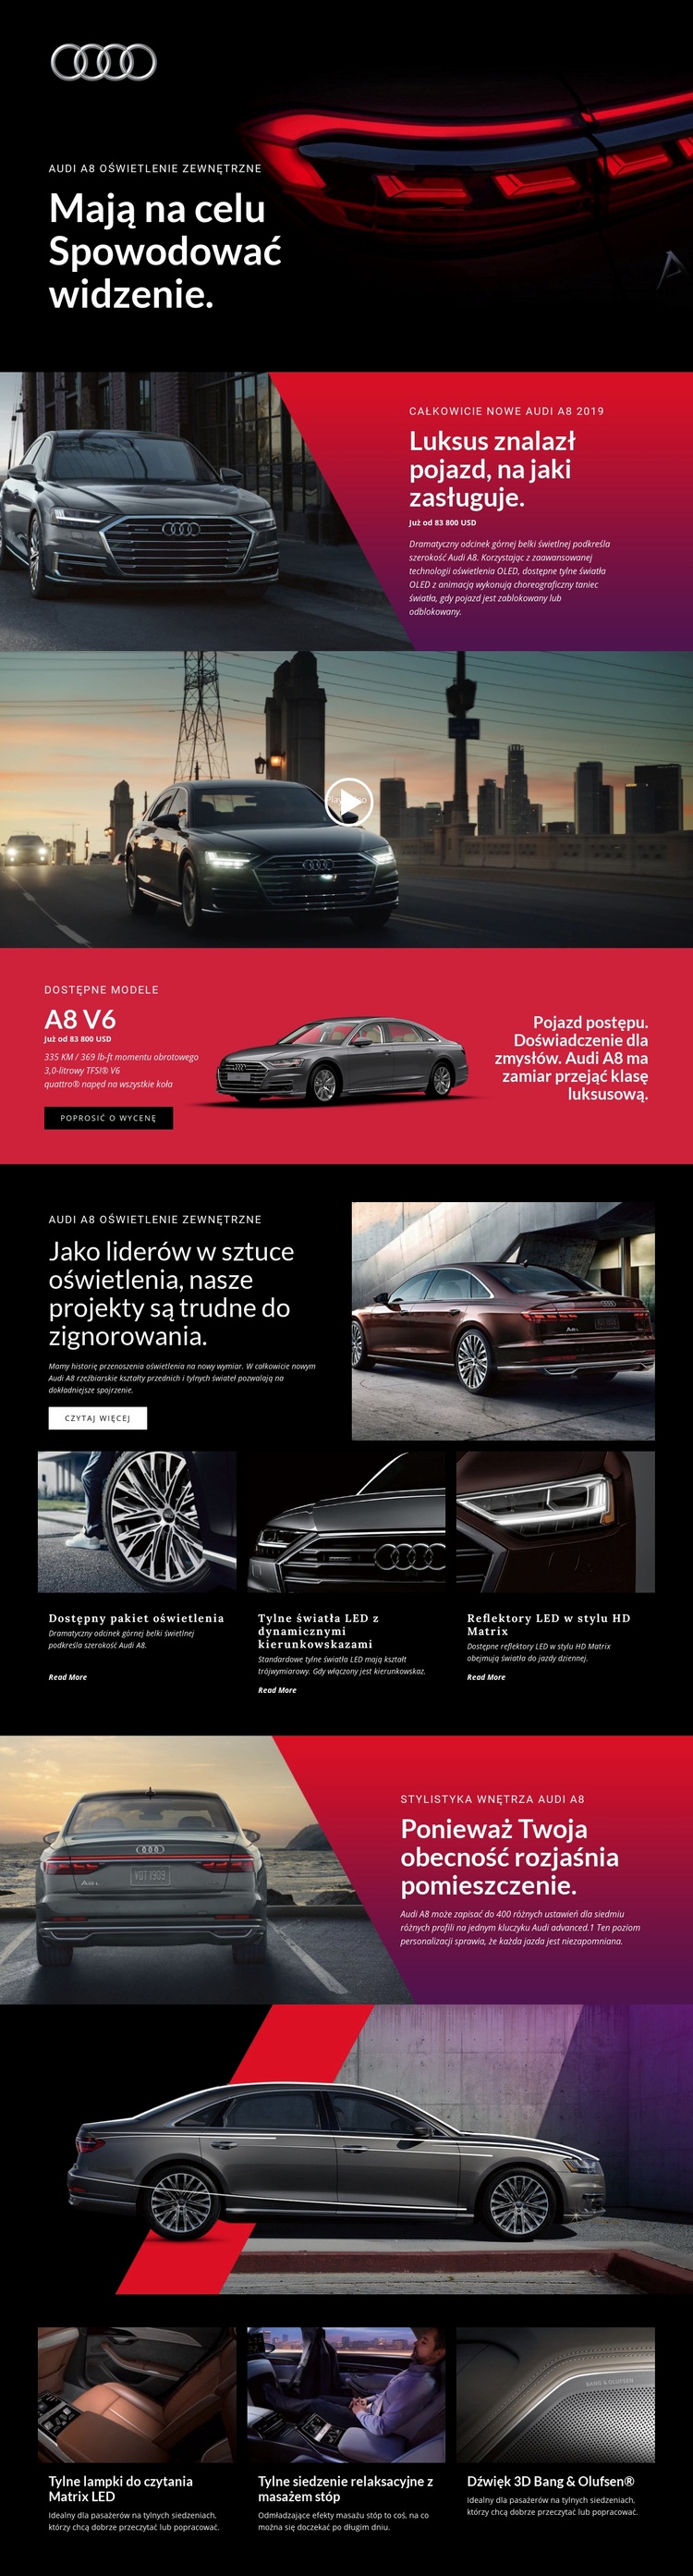 Luksusowe samochody Audi Makieta strony internetowej